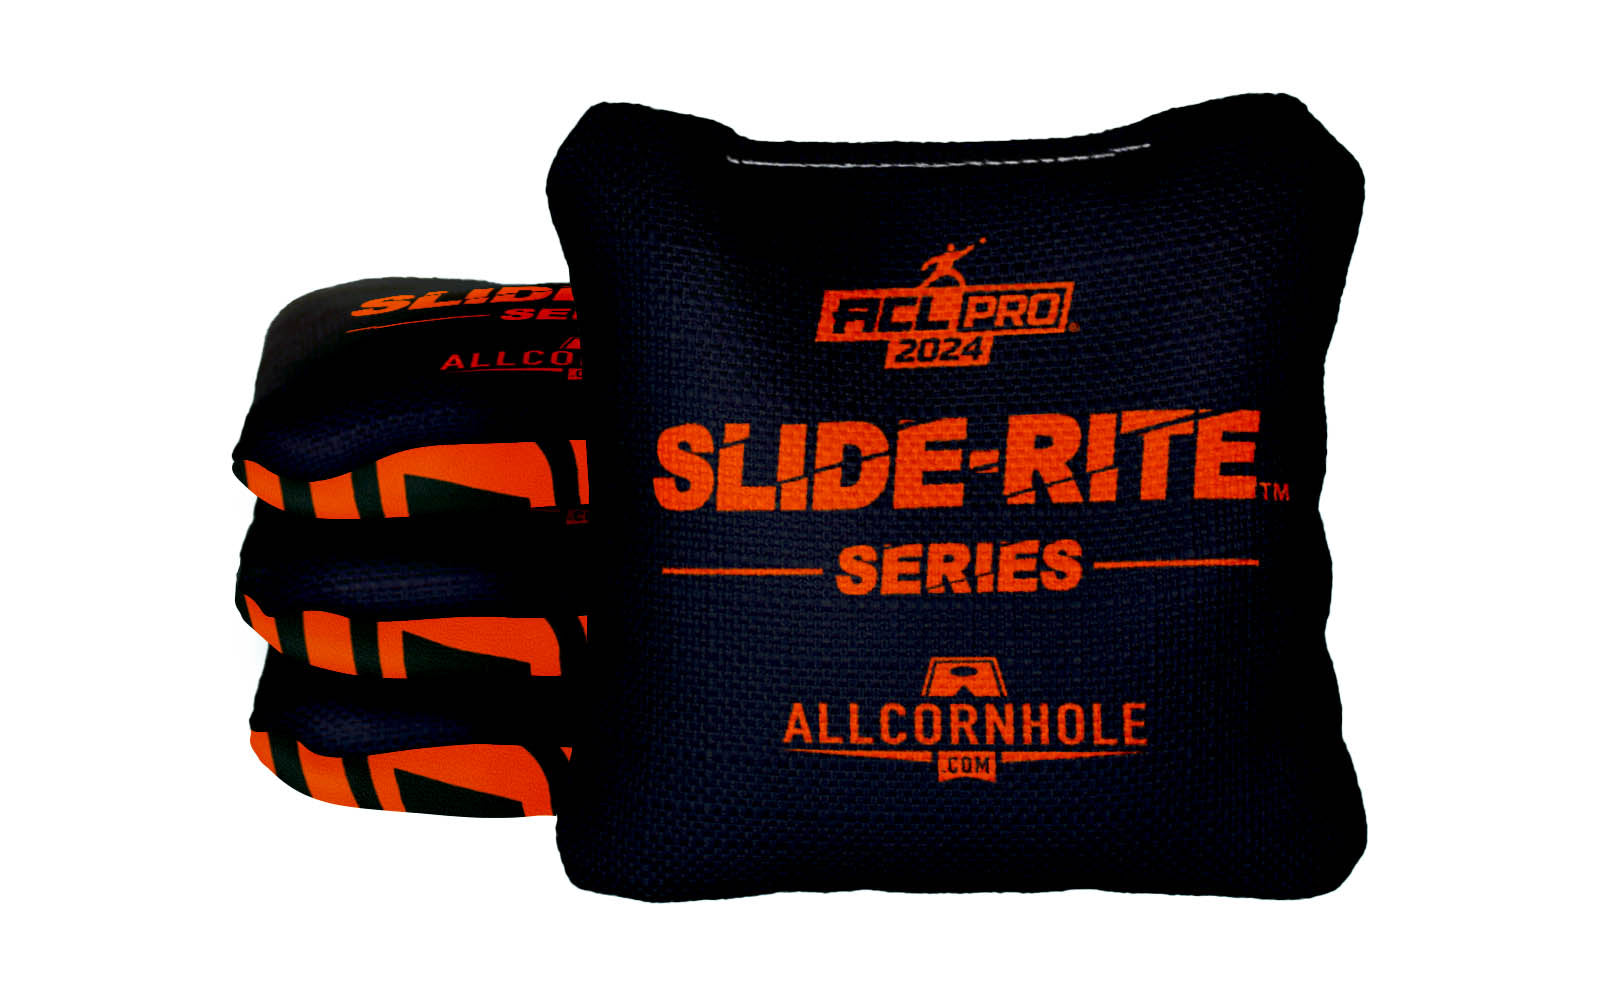 Officially Licensed Collegiate Cornhole Bags - AllCornhole Slide Rite - Set of 4 - Oklahoma State University